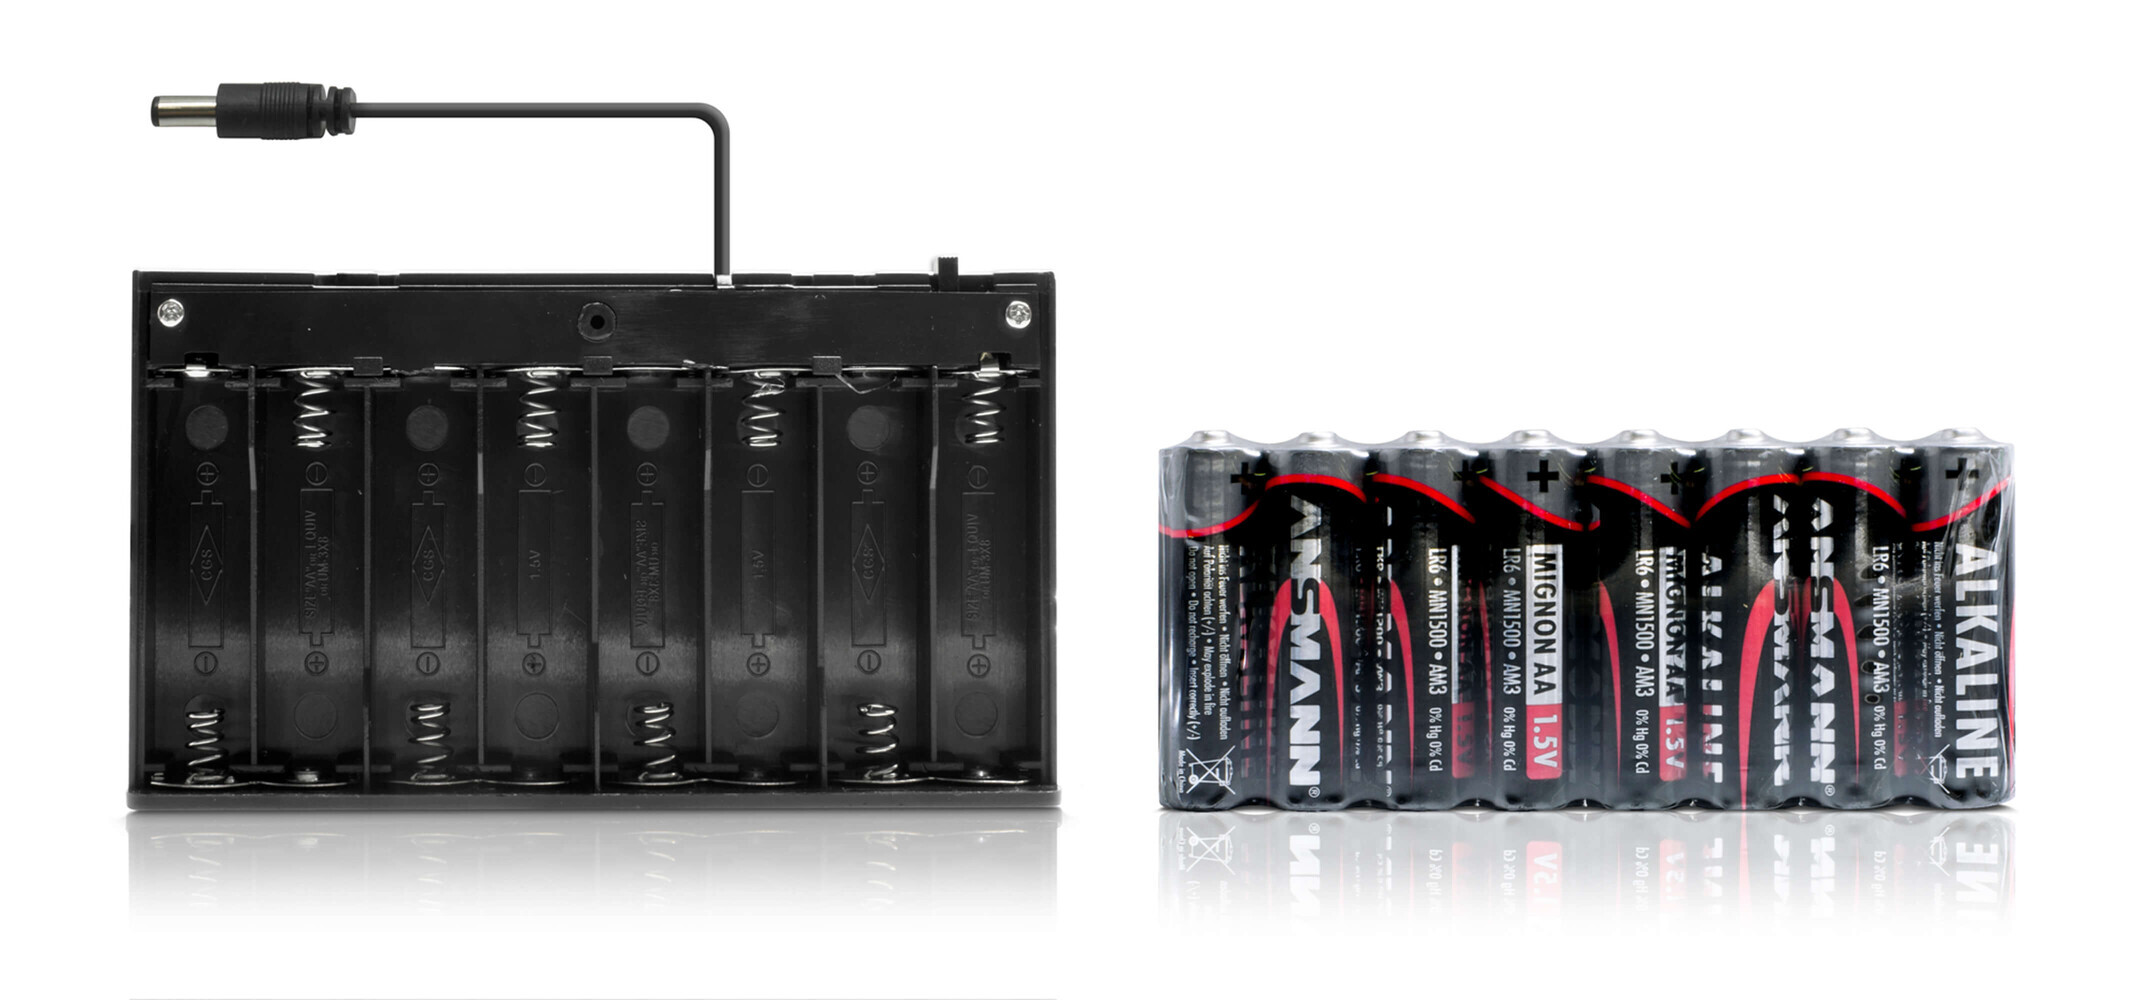 LED Universum von NA - Batteriebox für mobile LED Anwendungen - hochwertig und vielseitig einsetzbar